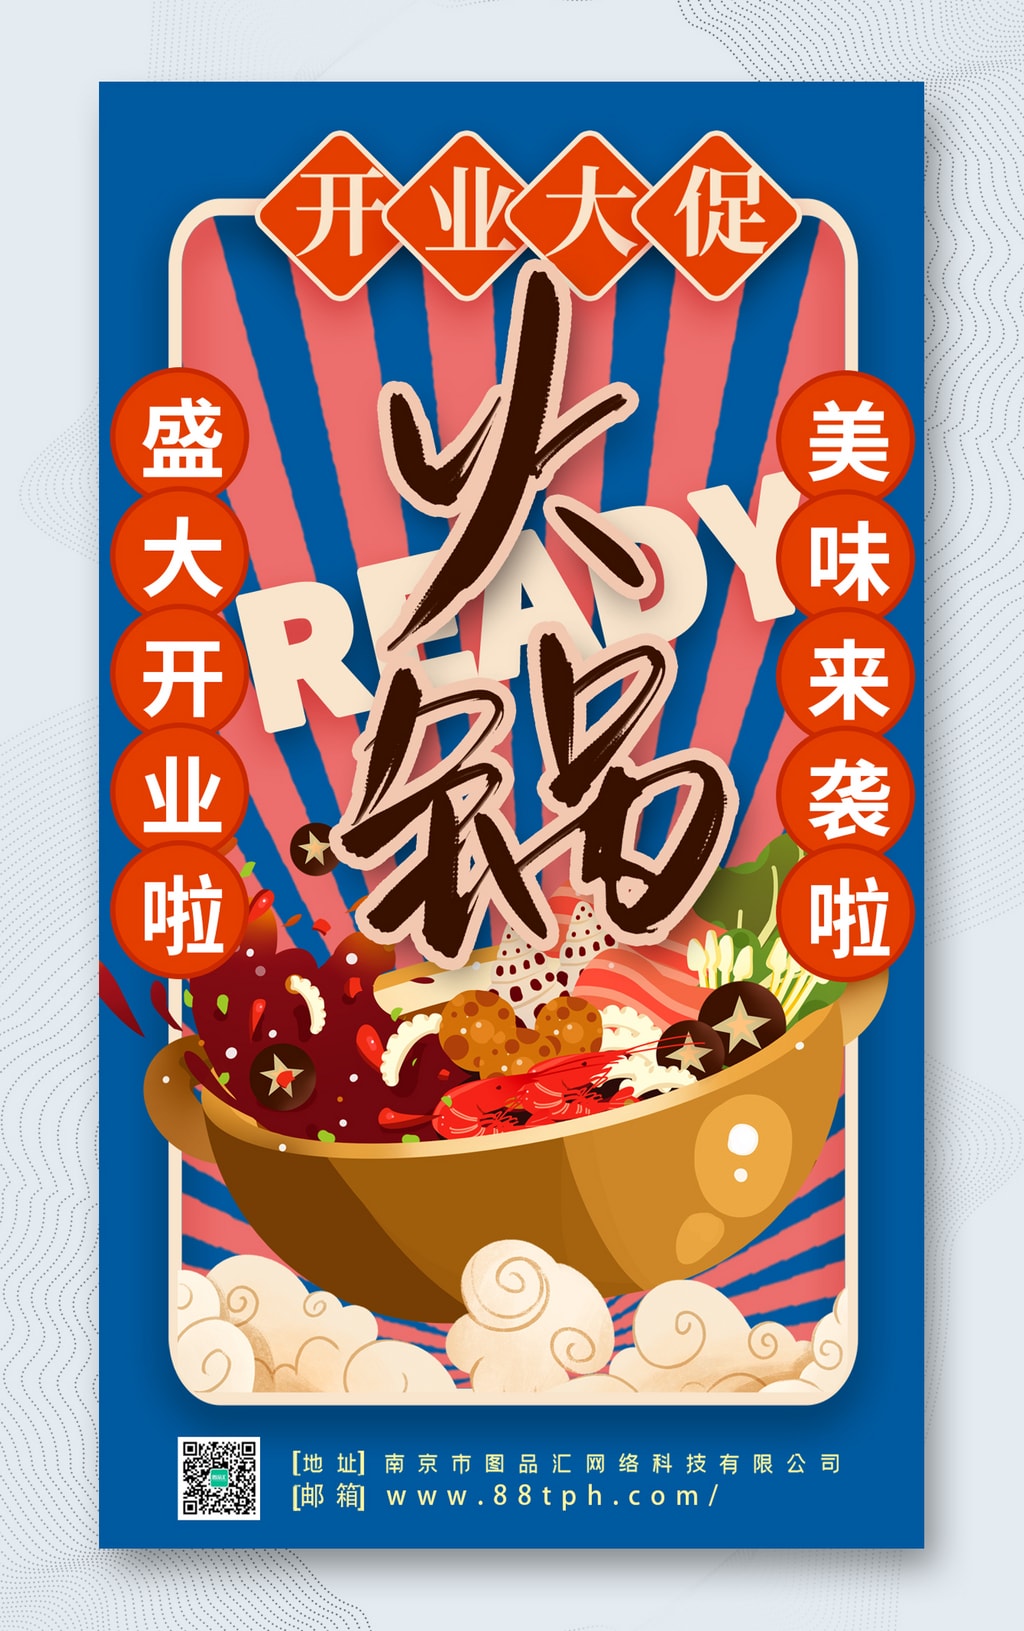 火锅食材超市开业宣传海报